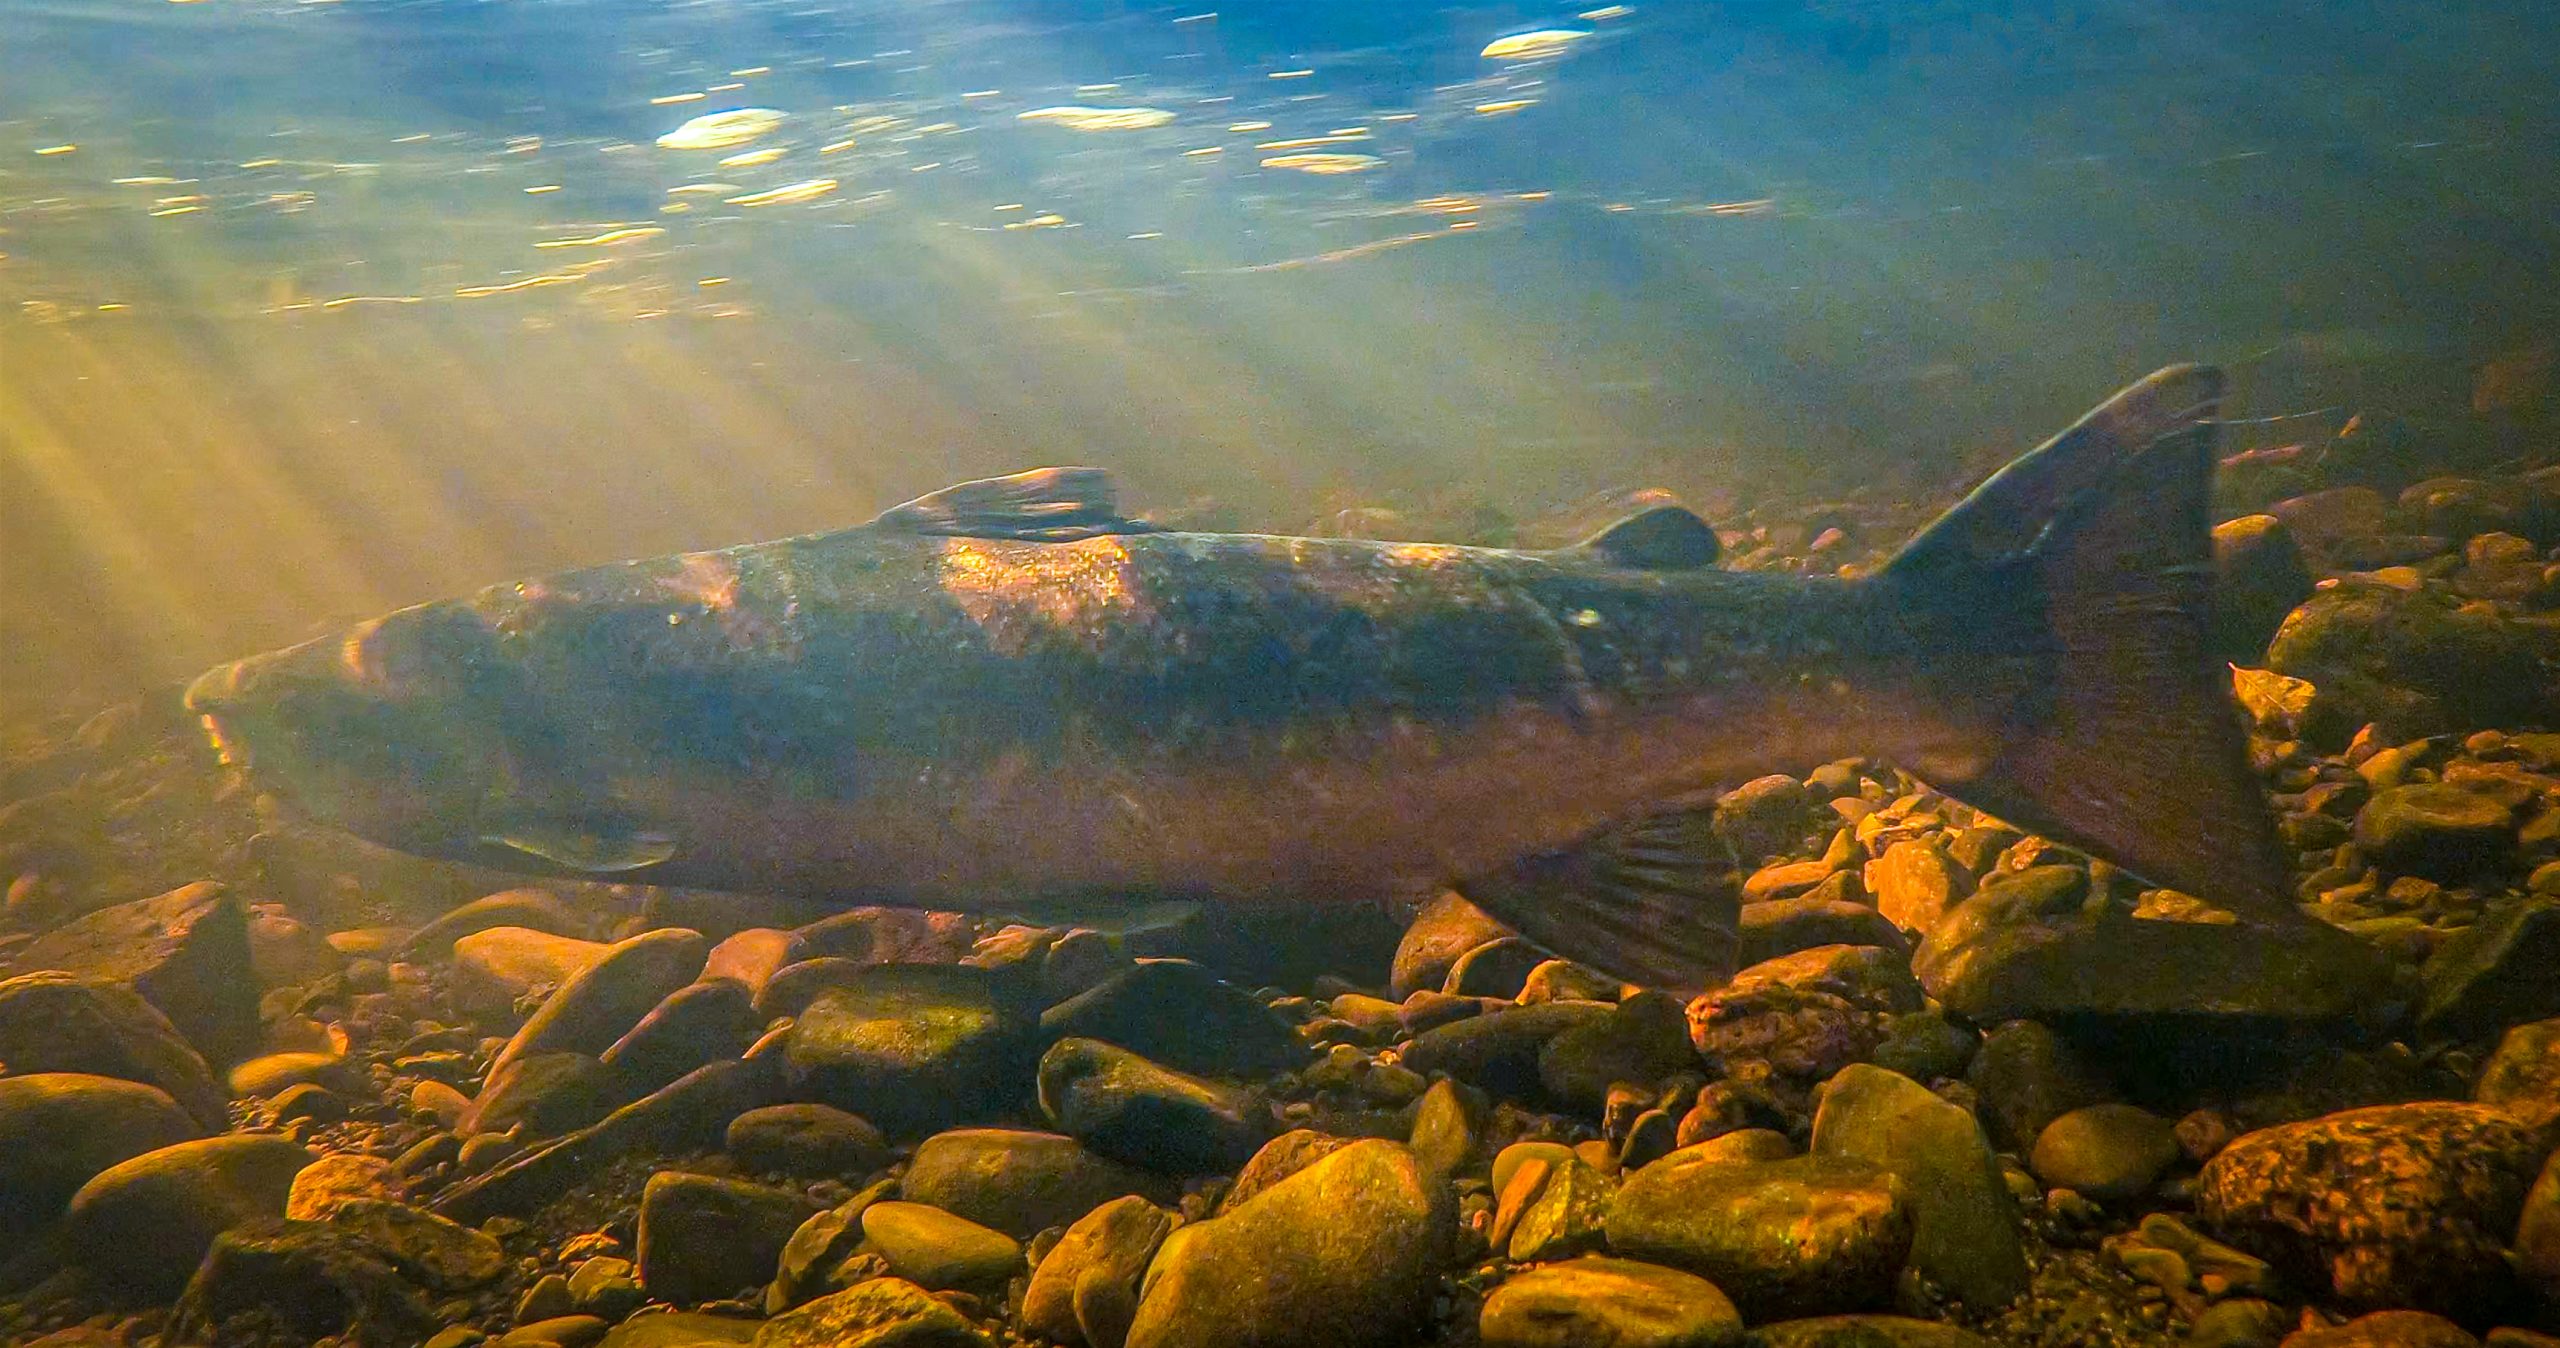 Salmon spawning Girvan